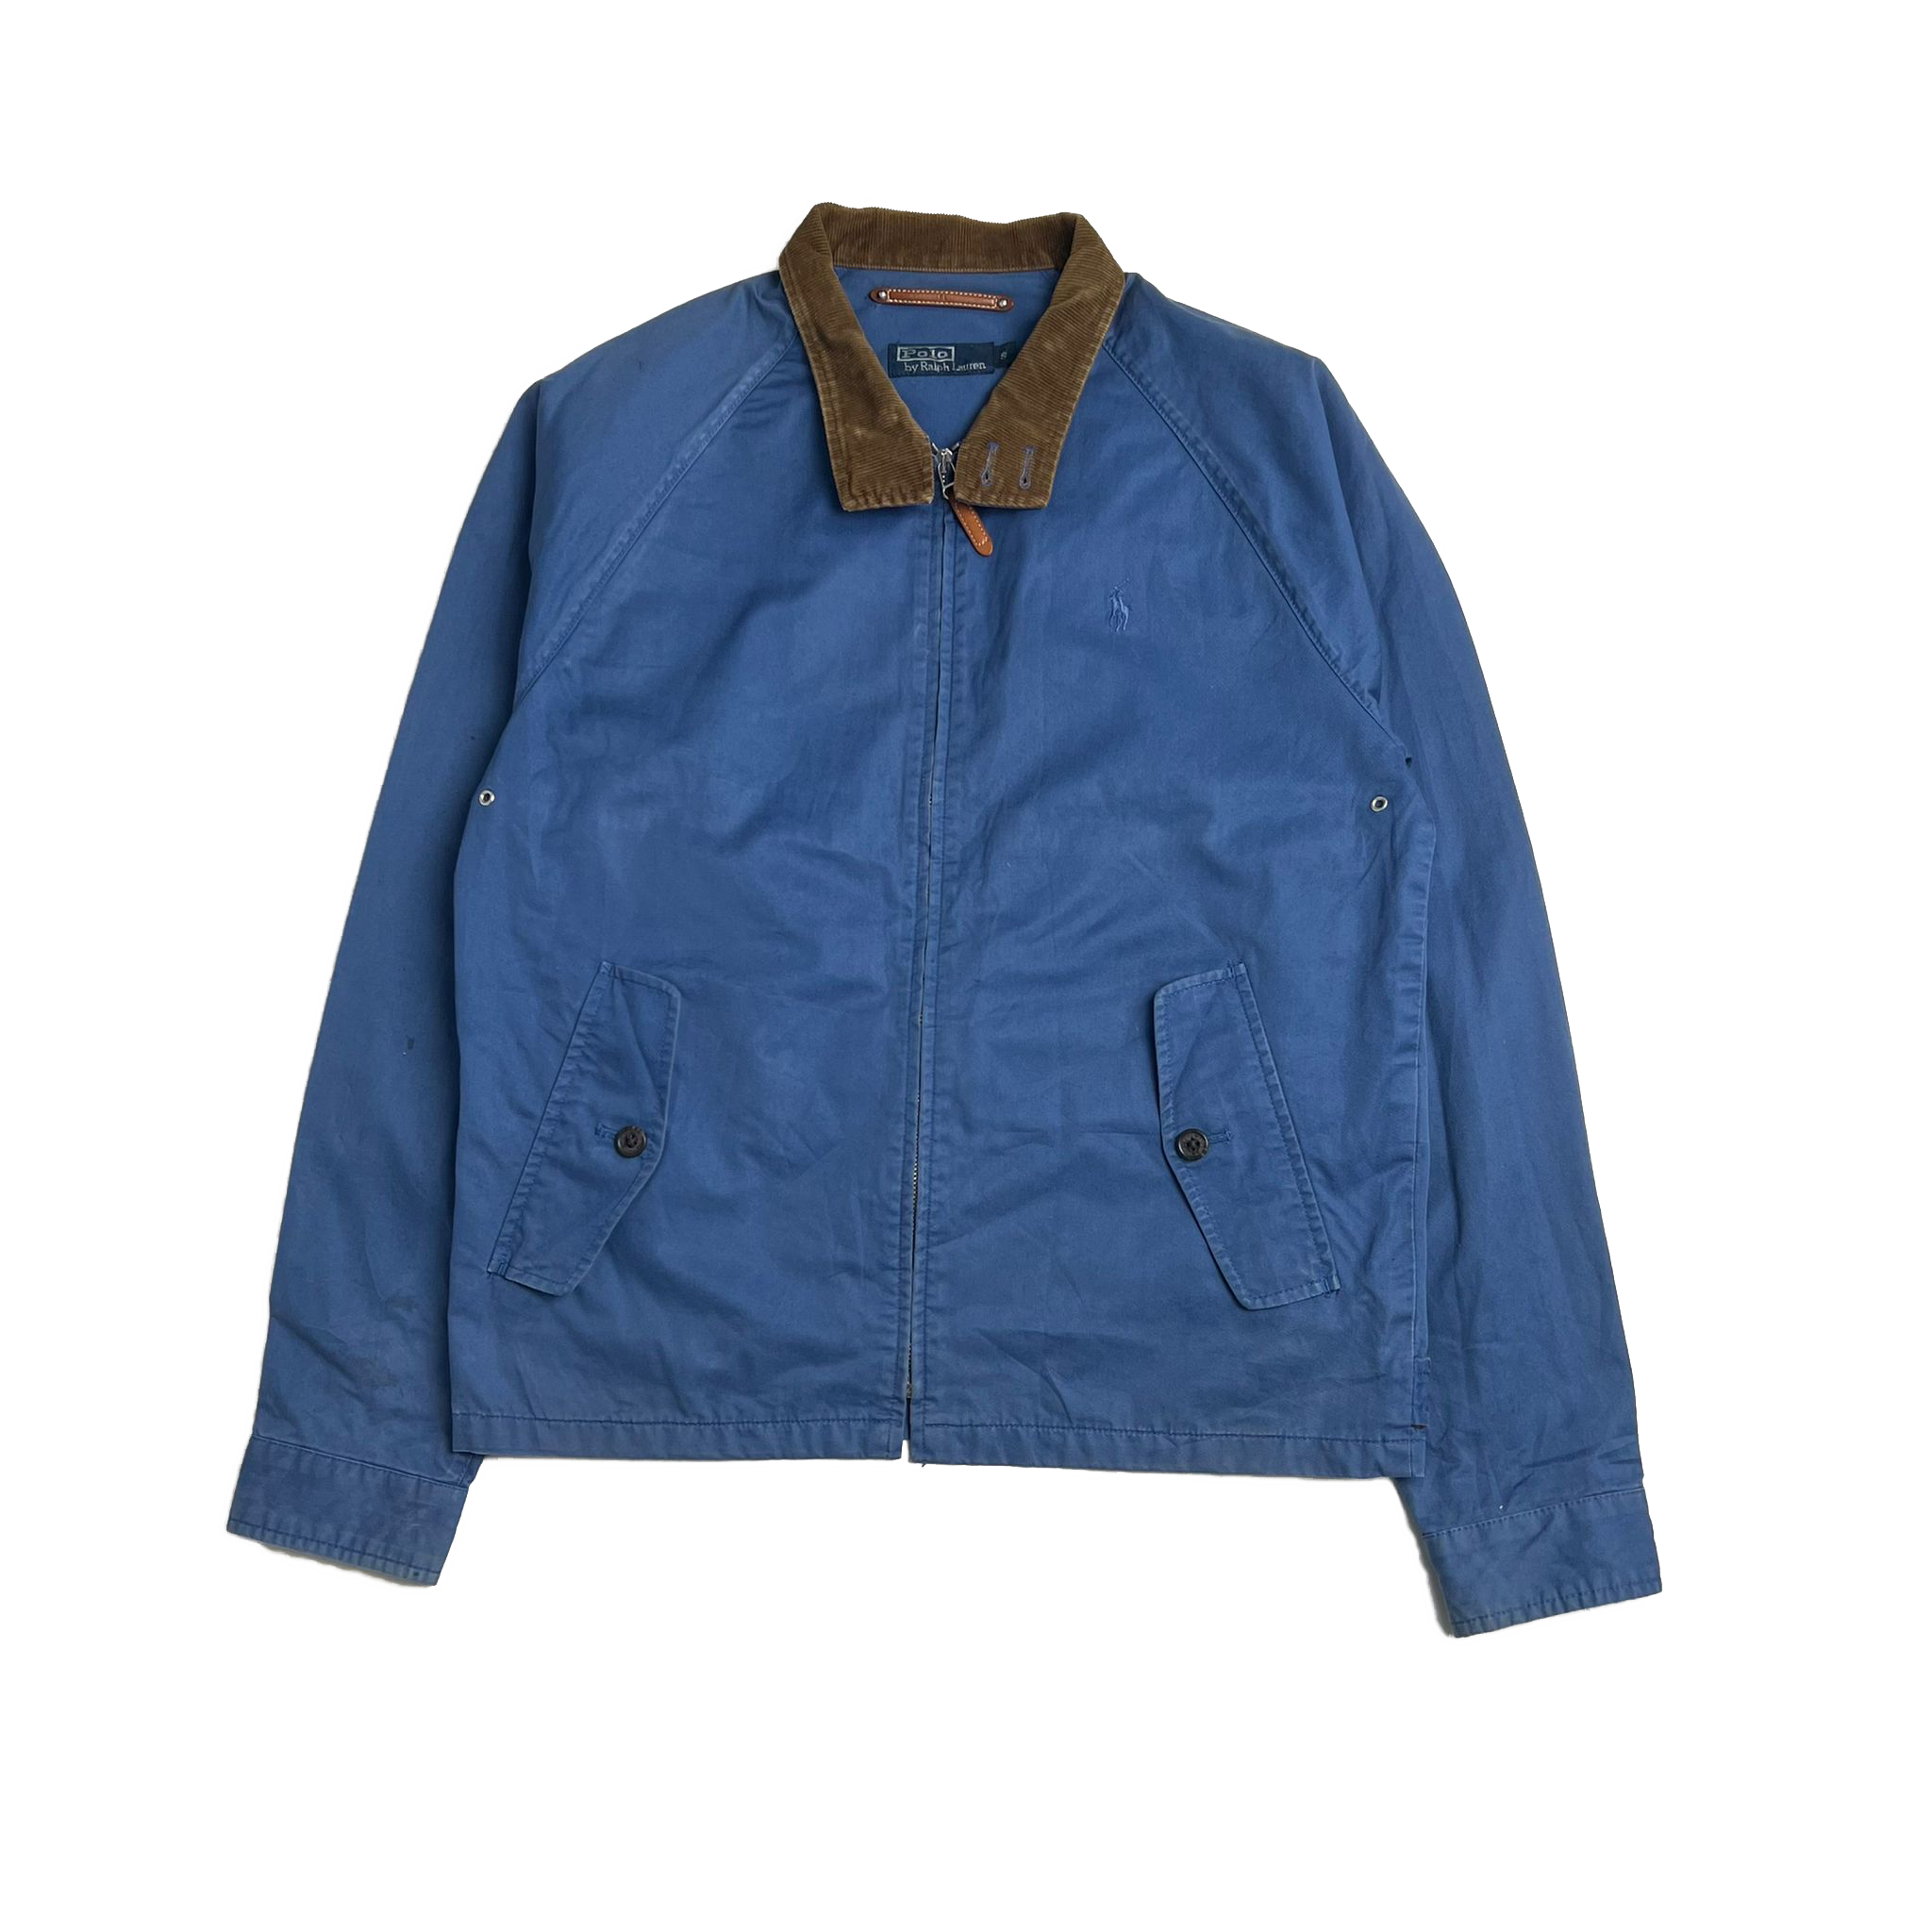 90's Ralph Lauren jacket